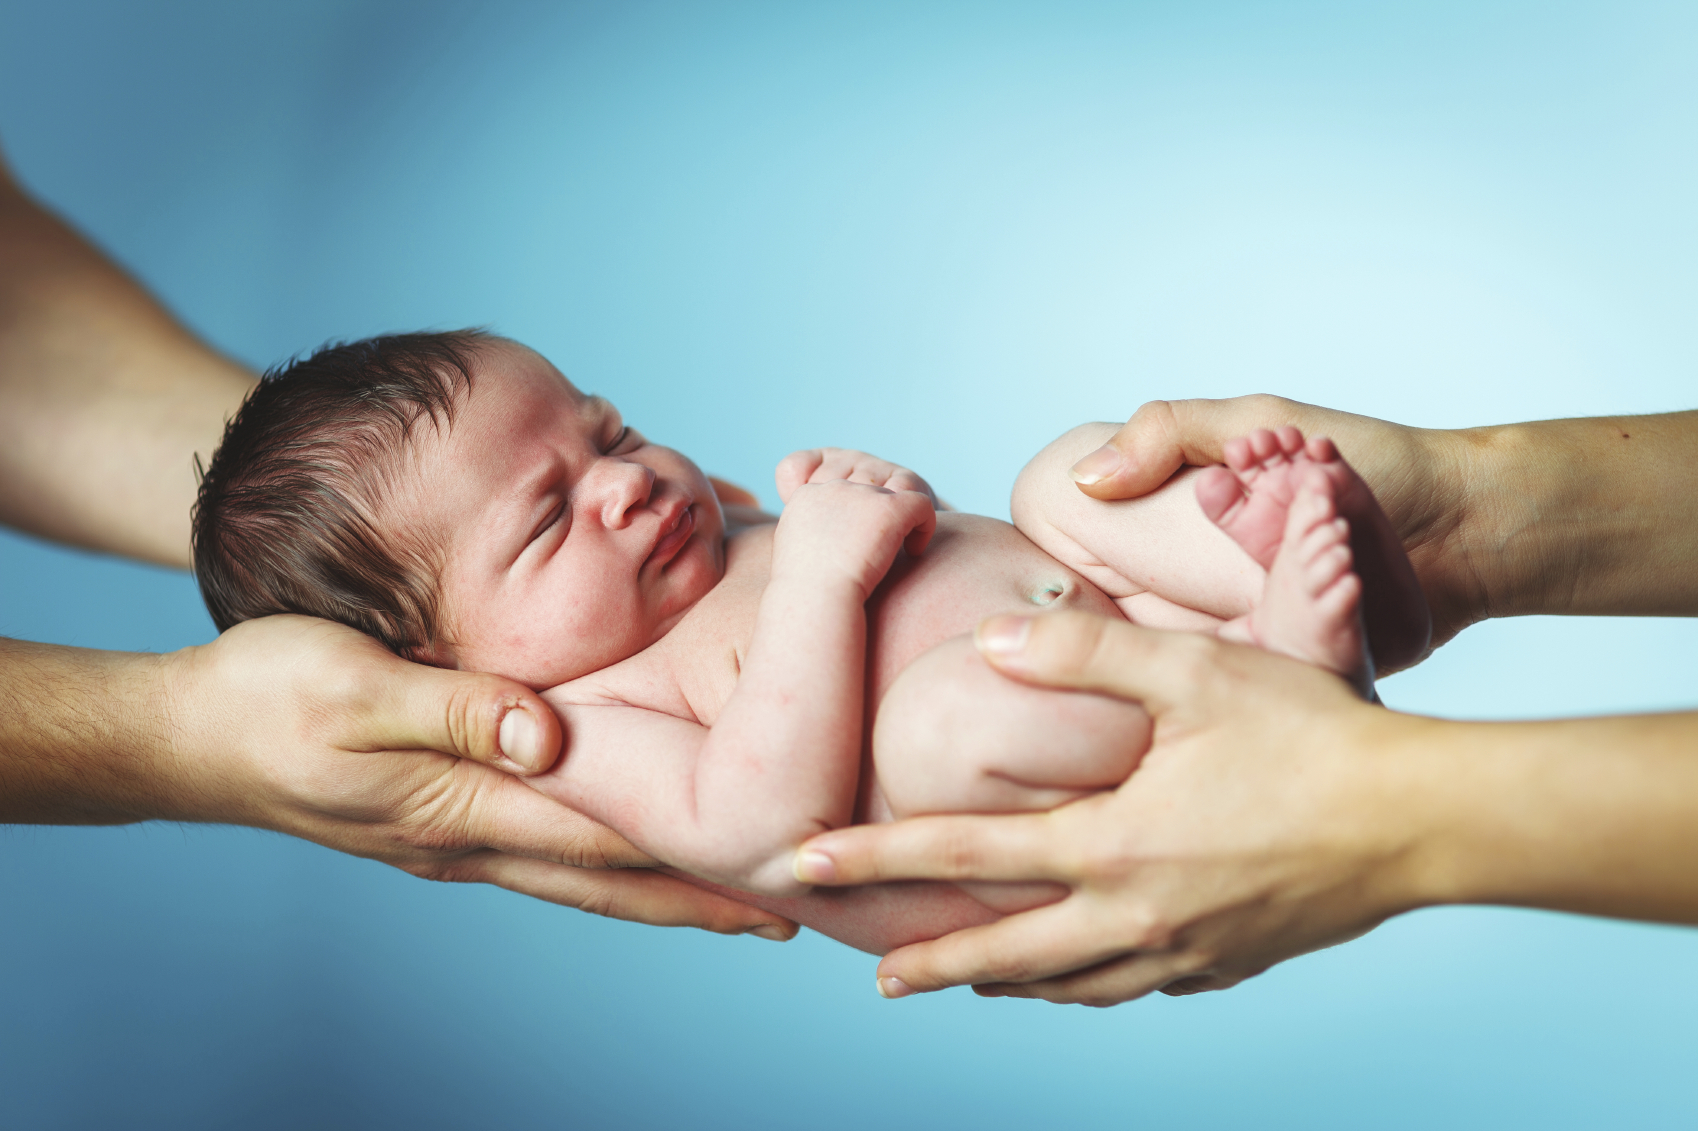 Séparer un nouveau-né de sa mère l'expose à de graves risques  psychologiques | Genethique